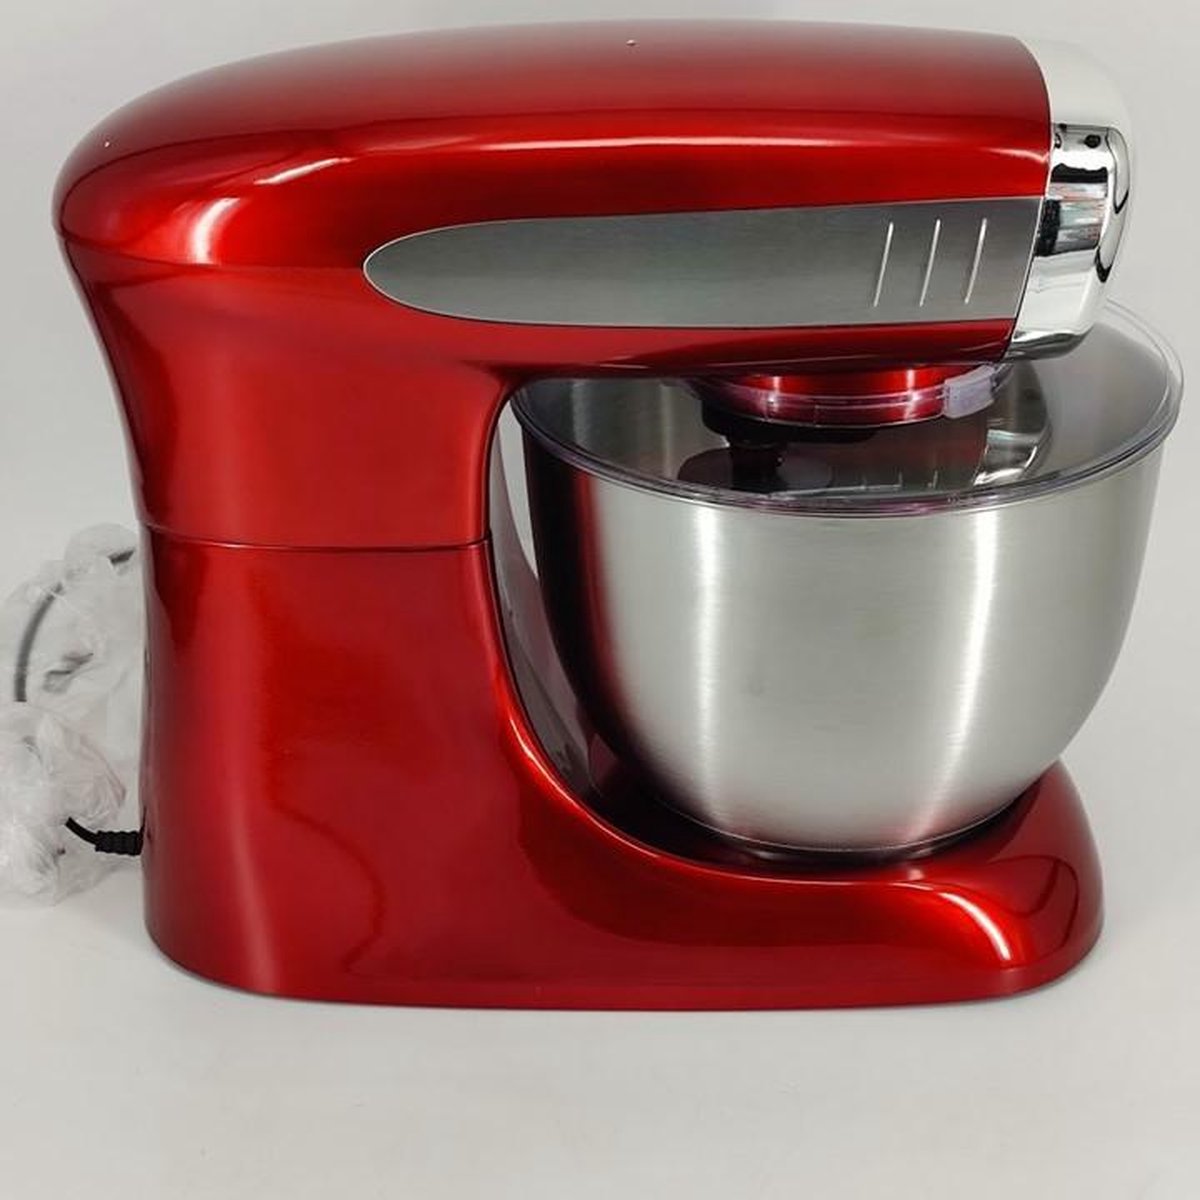 Rosenberg keukenmachine 6,5 liter rood | bol